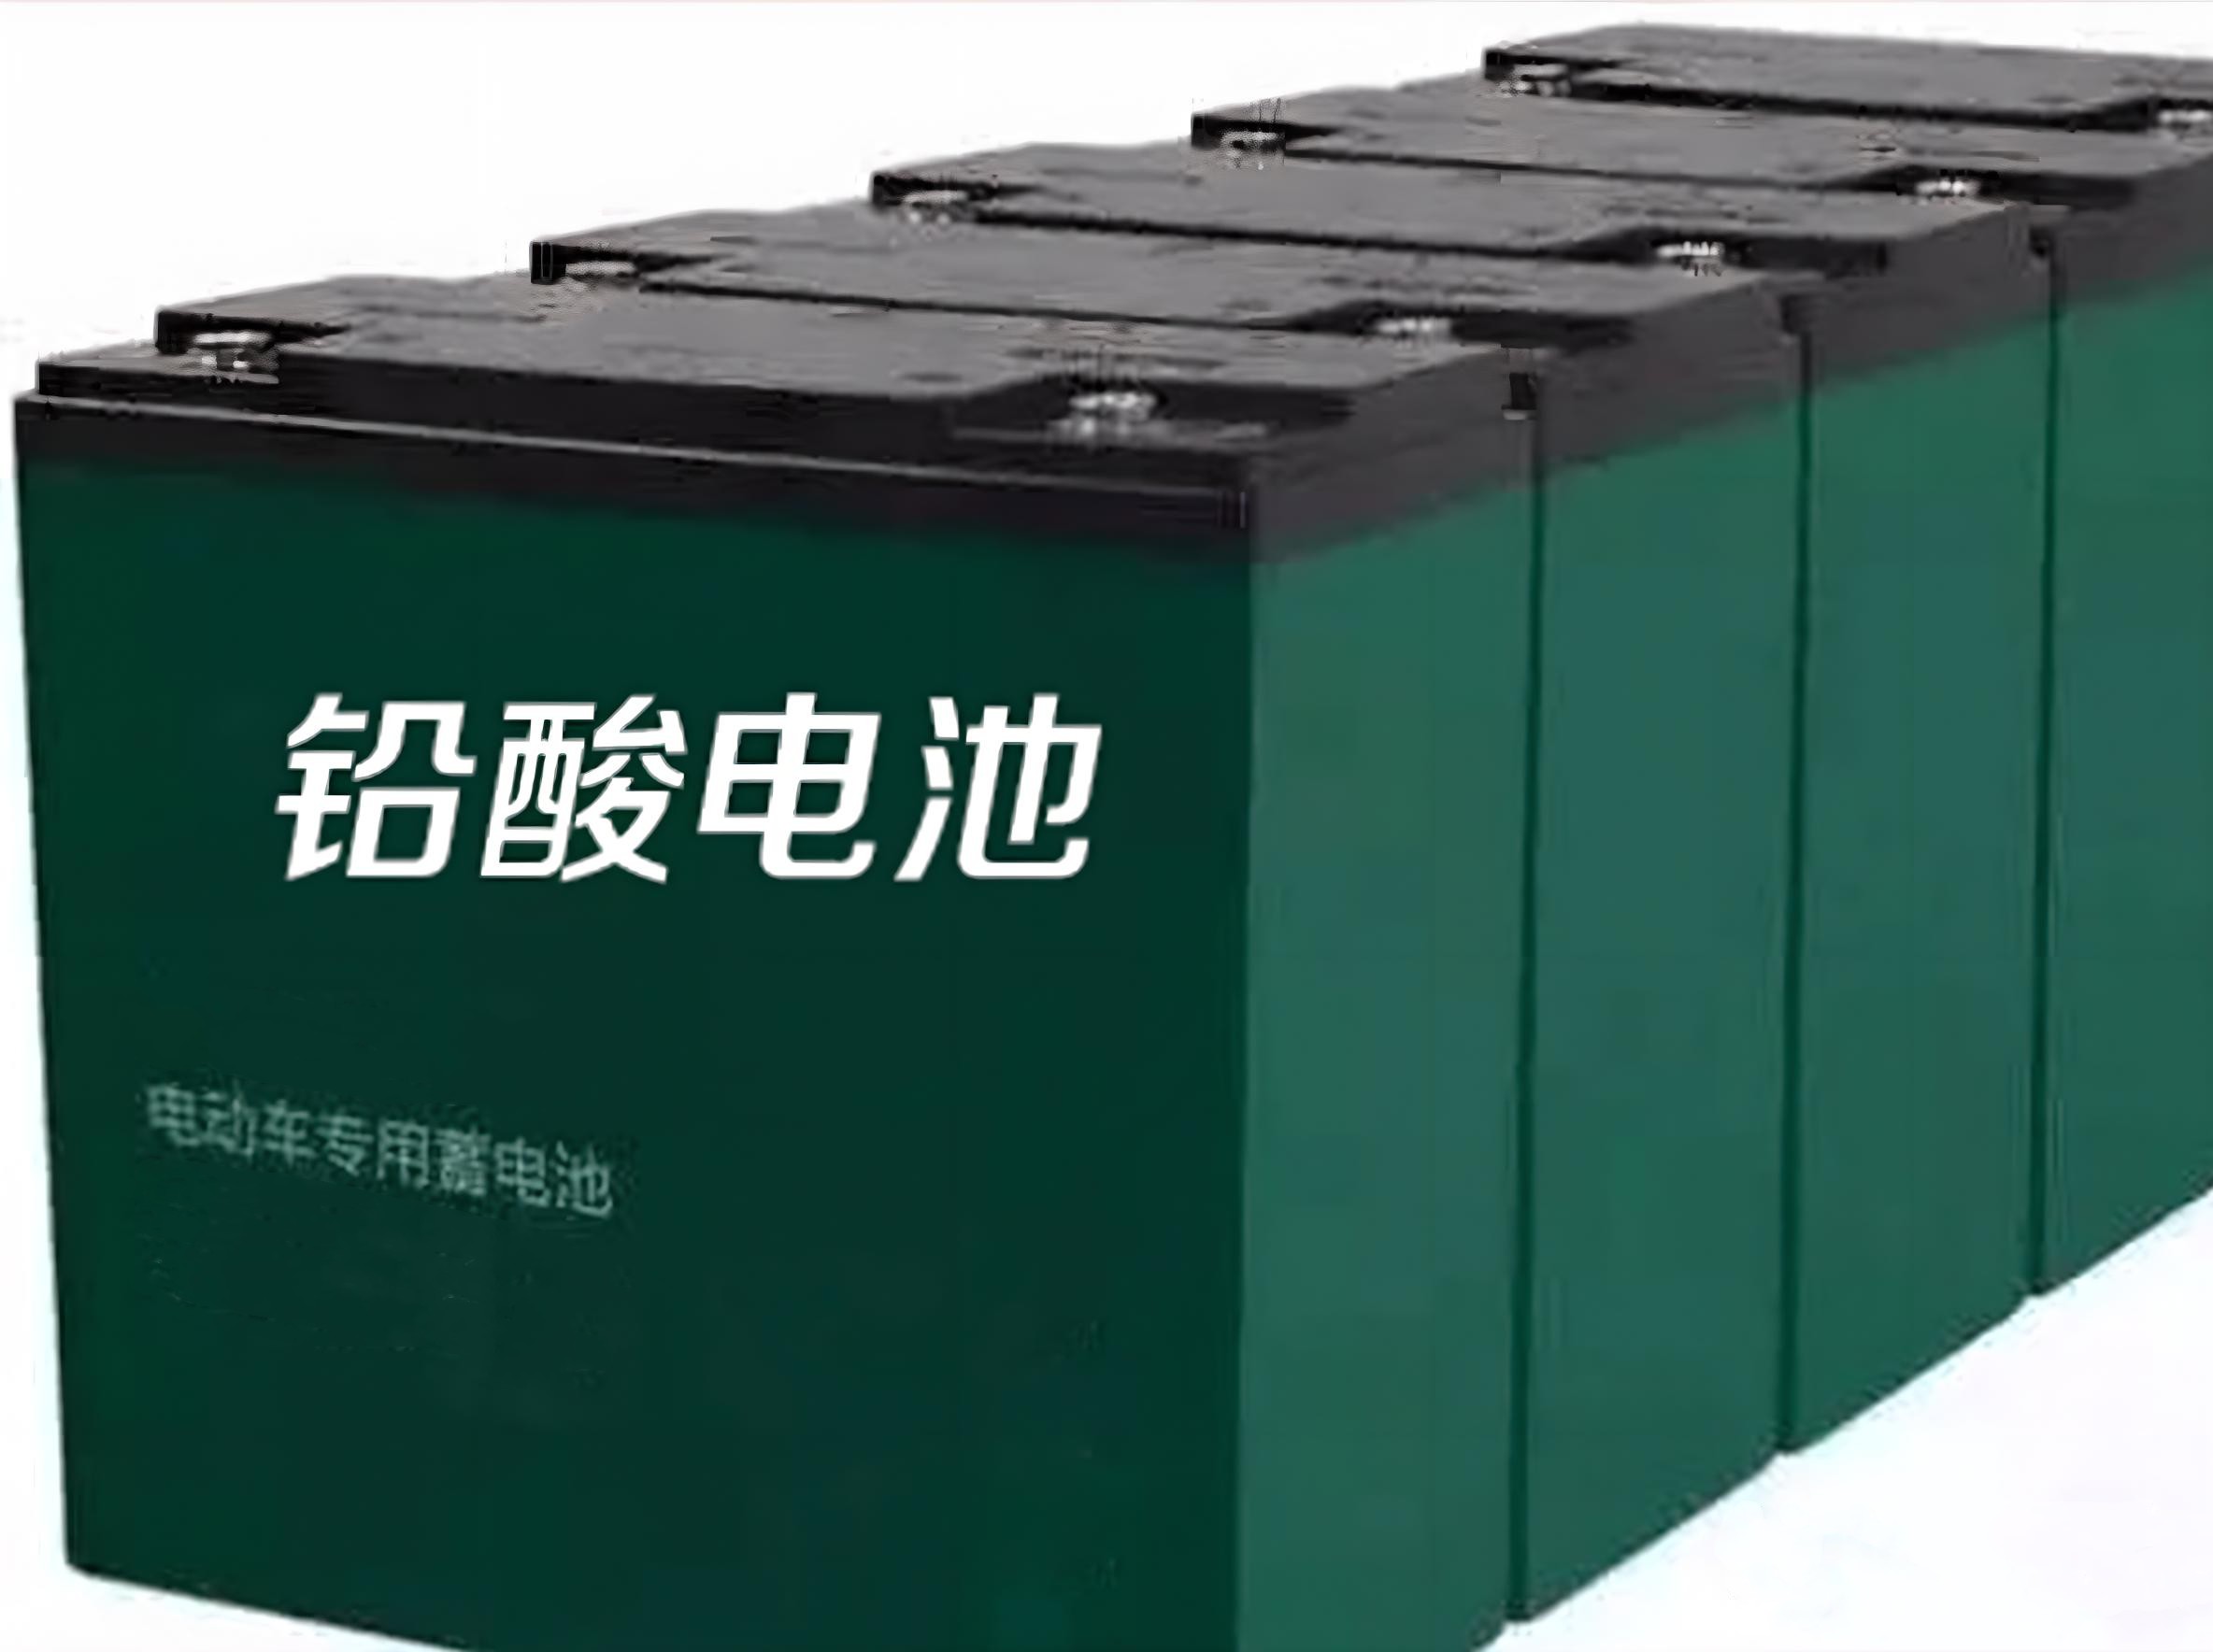 扬州市铅酸蓄电池厂家铅酸蓄电池来找扬州博森四通新能源,您想要的蓄电池都有!